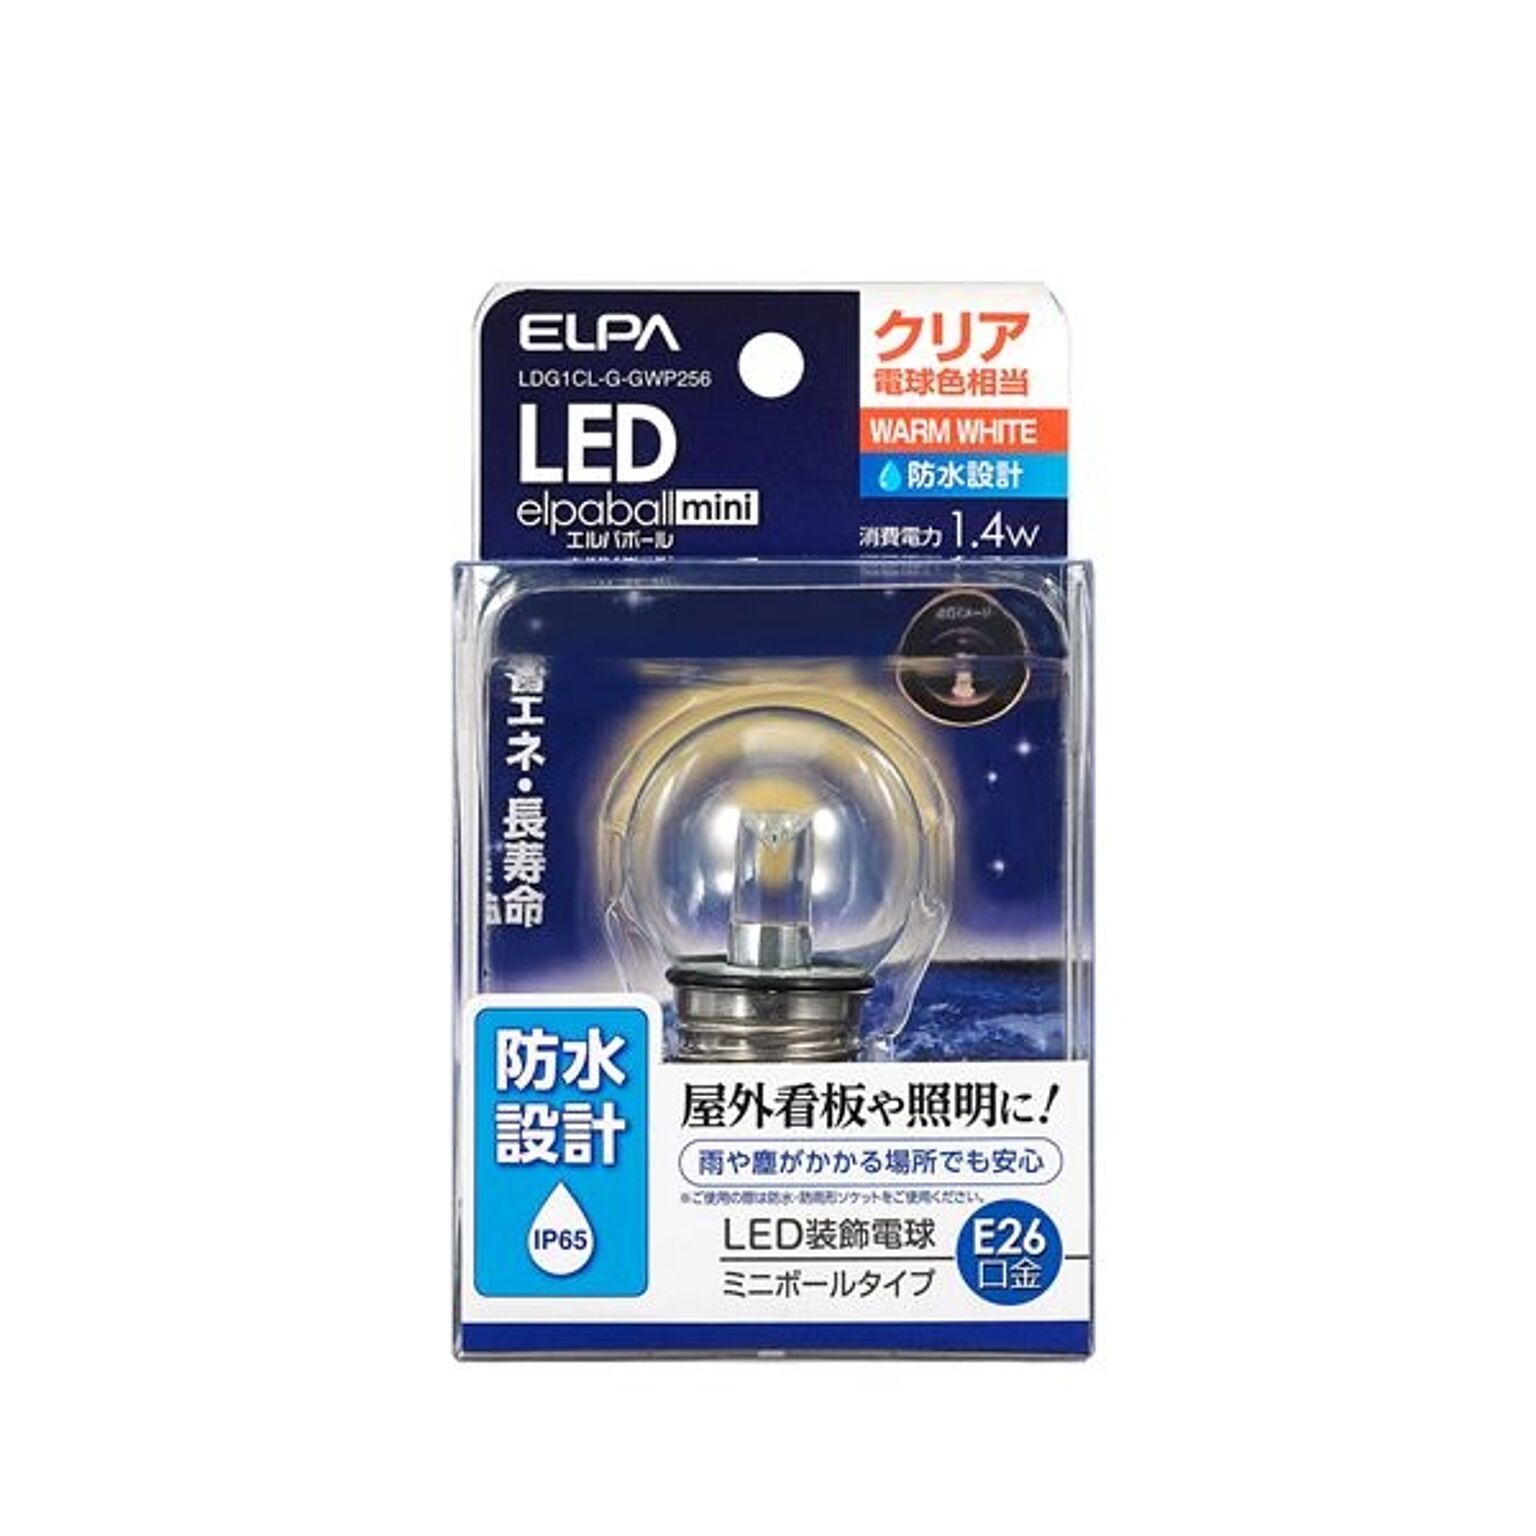 （まとめ） ELPA 防水型LED装飾電球 ミニボール球形 E26 G40 クリア電球色 LDG1CL-G-GWP256 【×5セット】